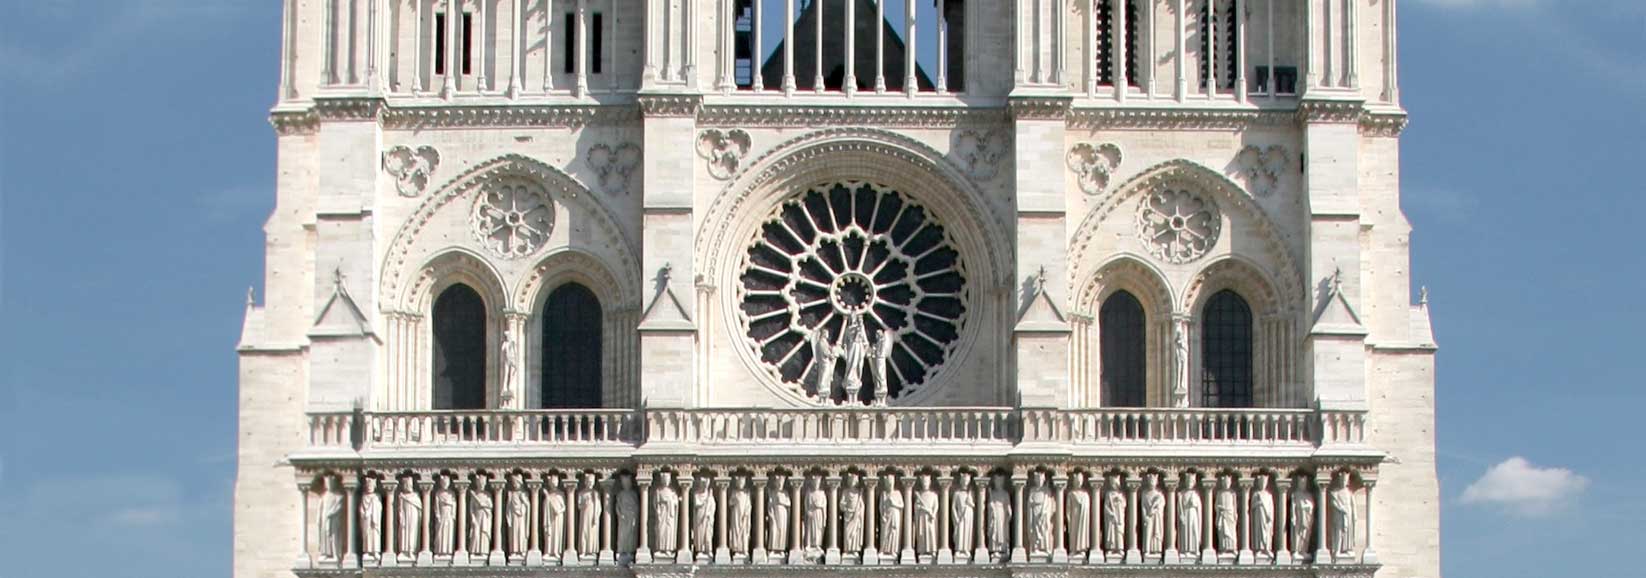 Detail of Notre-Dame, Paris, France